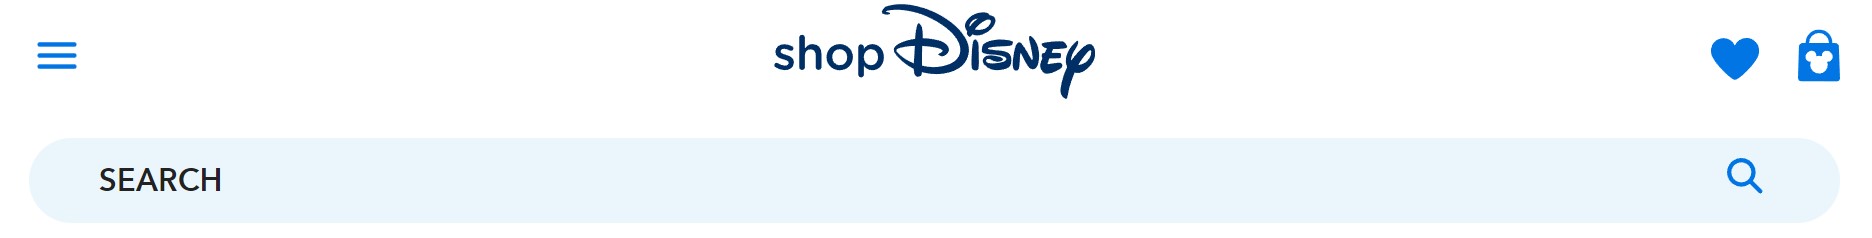 shop Disney